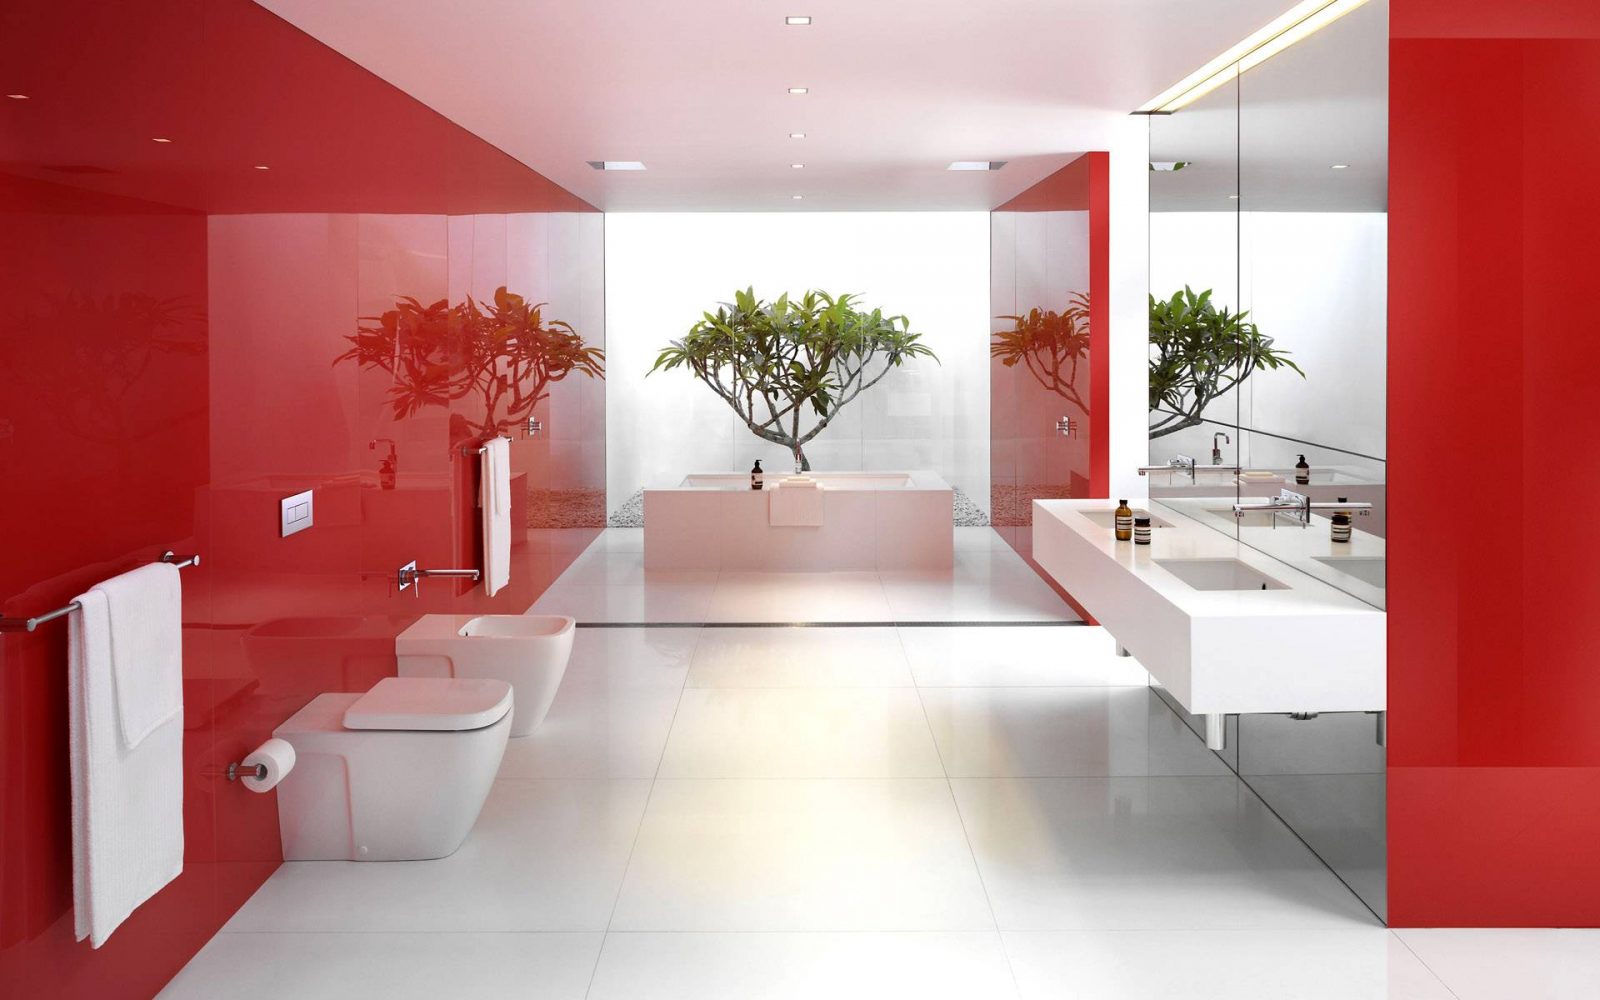 Baño moderno de tonos rojos